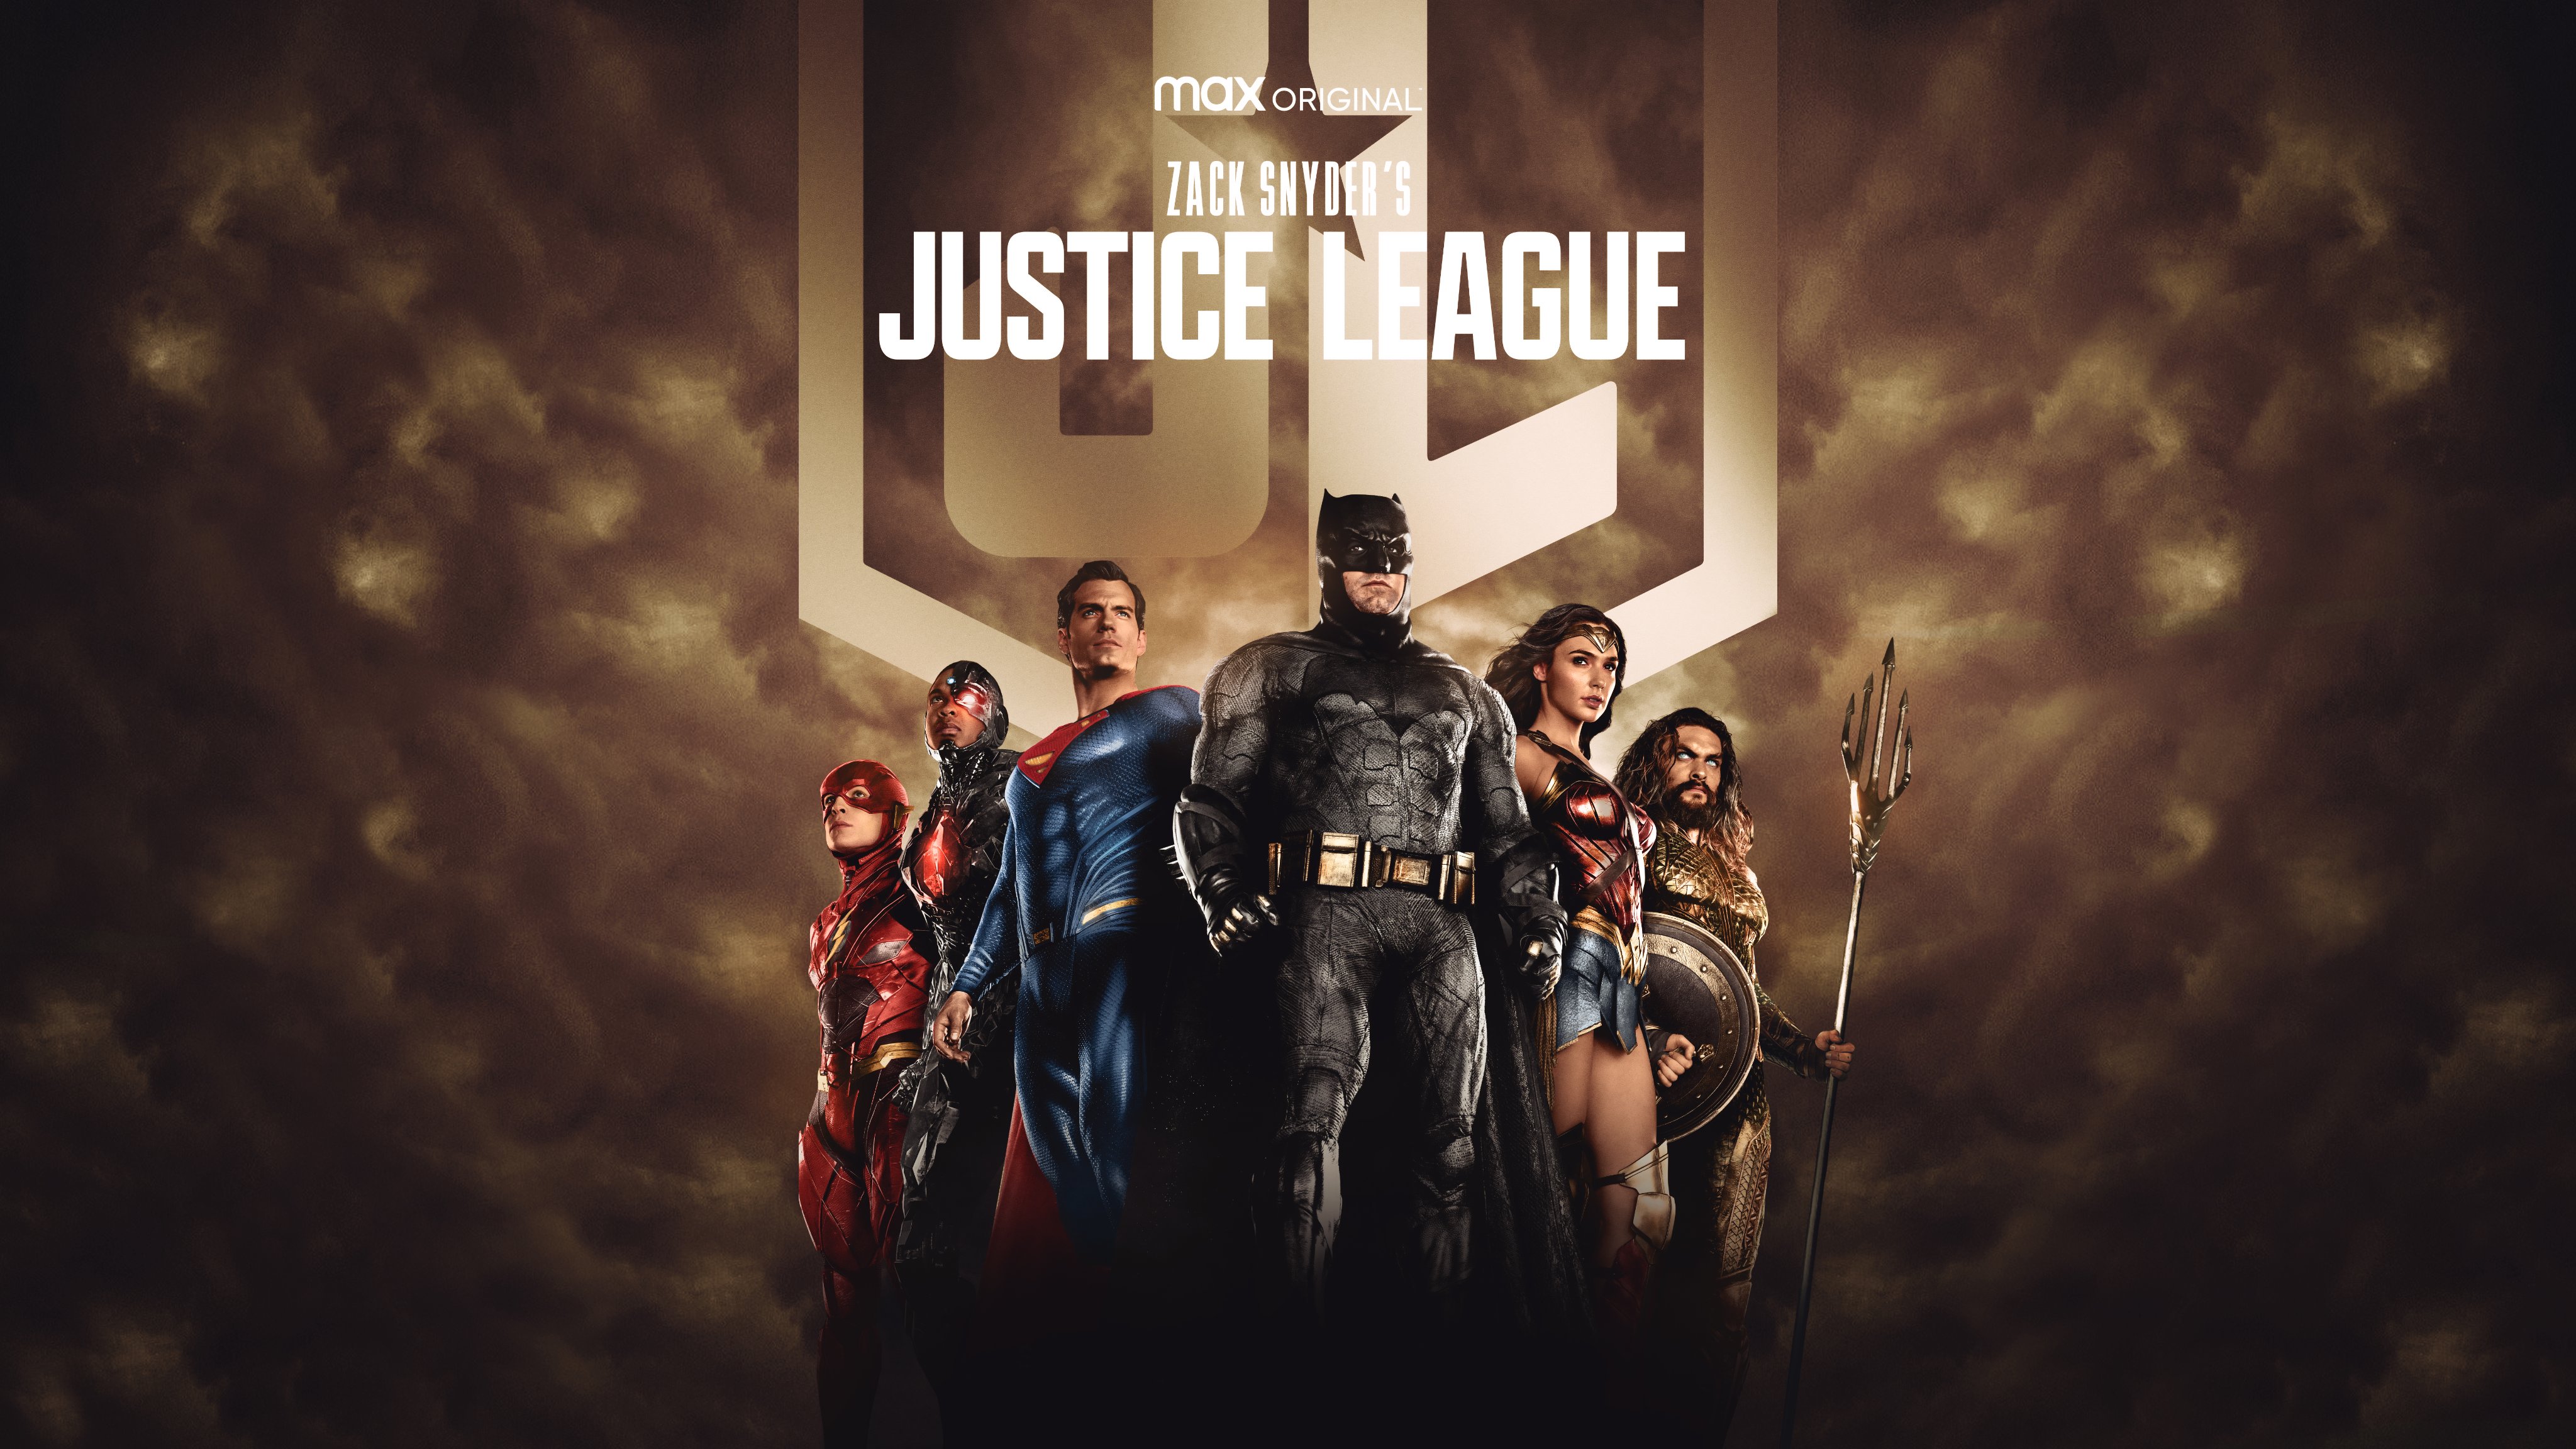 zack snyder's justice league, movie, aquaman, barry allen, batman, cyborg (dc comics), dc comics, flash, justice league, superman, wonder woman